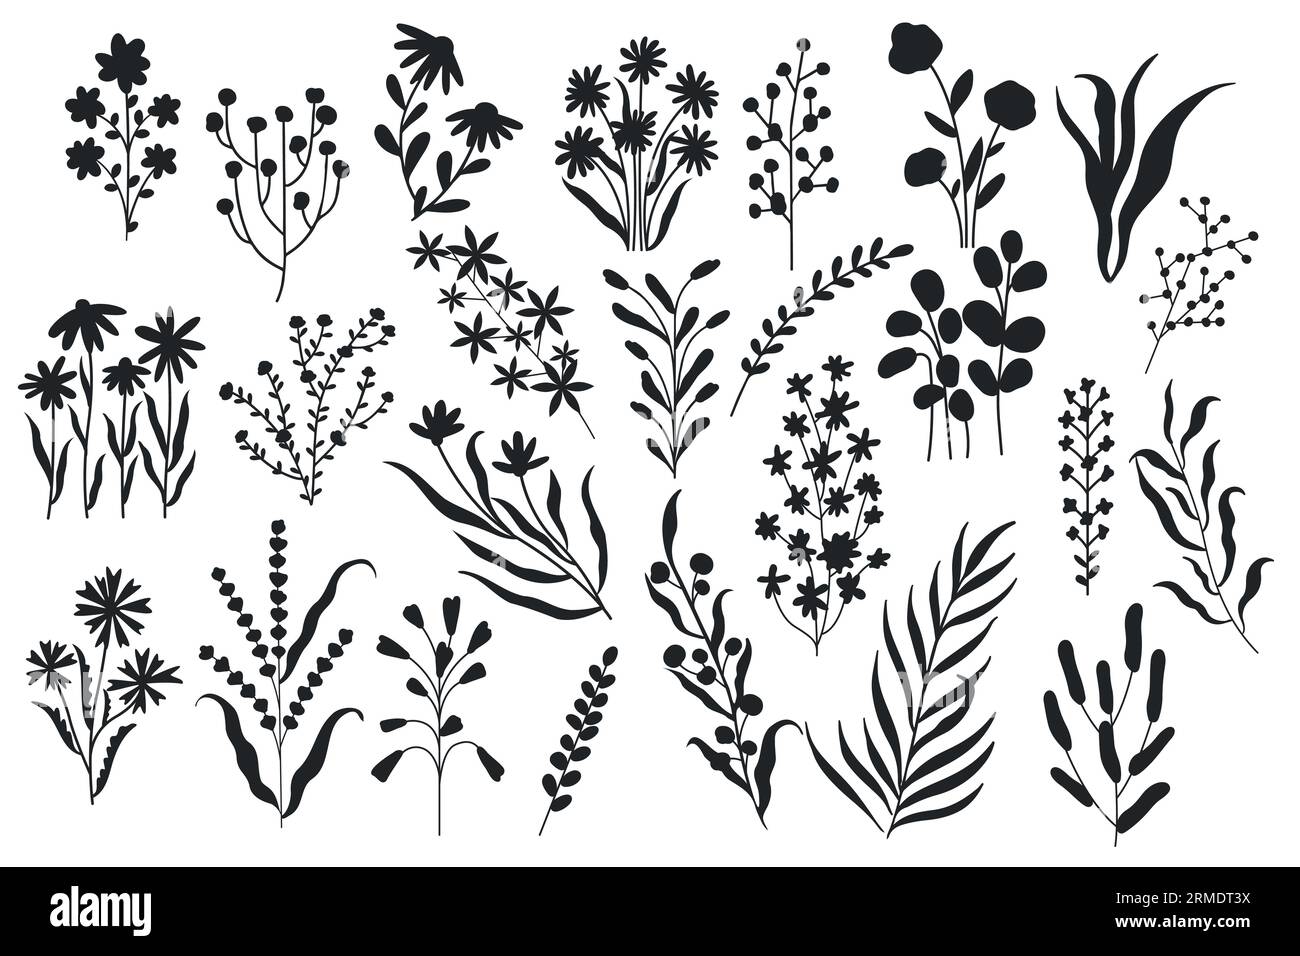 Silhouette mit wilden Blumen. Minimalistische florale botanische Elemente, Natur blühende Botanikblumen monochrome Pinselzeichnungen. Vektor-isoliertes Set Stock Vektor